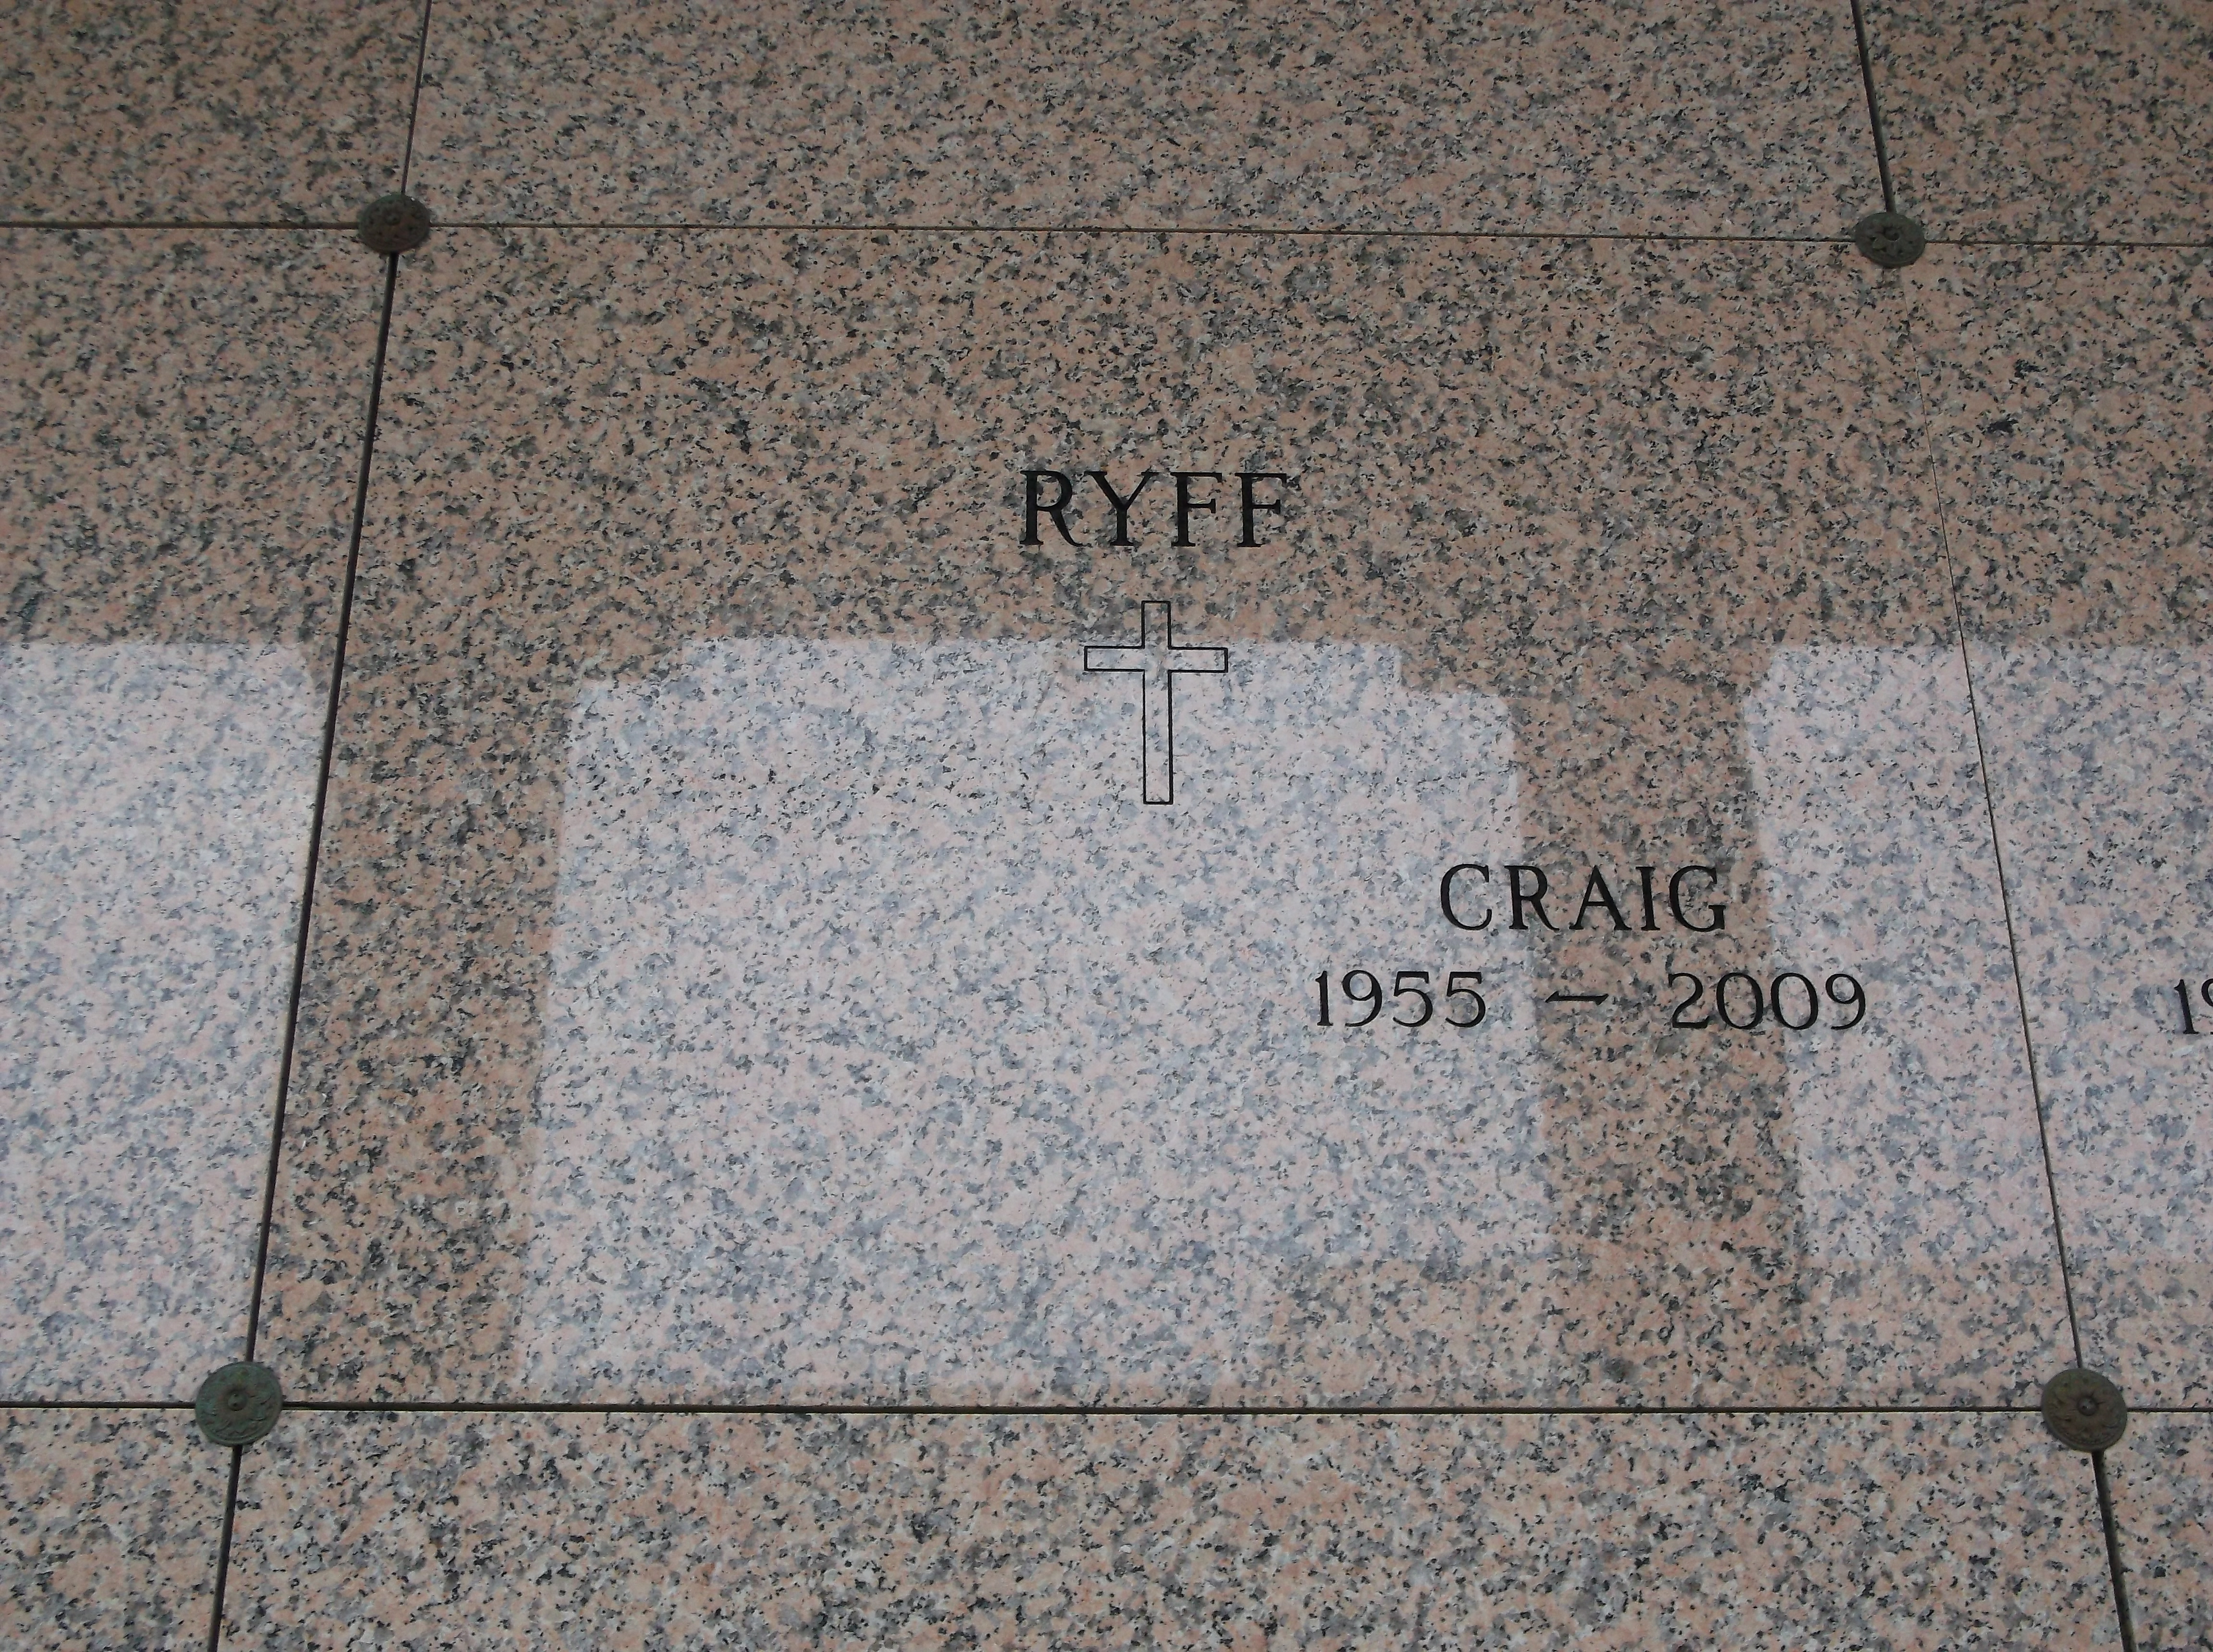 Craig Ryff